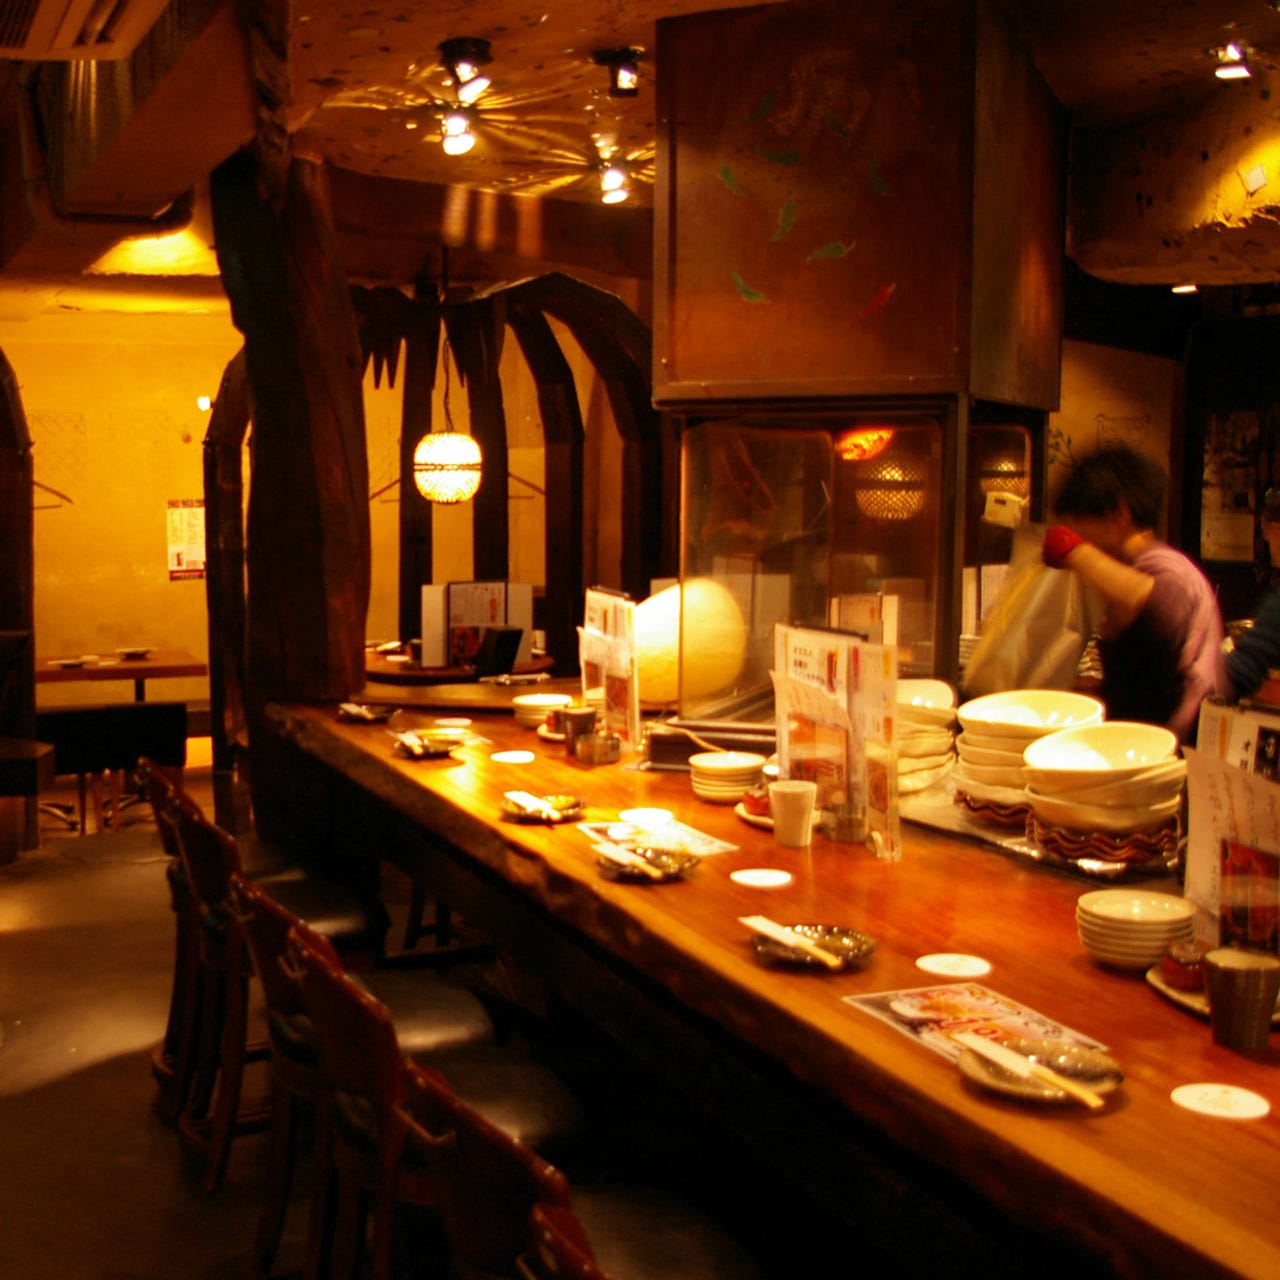 21年 最新グルメ 池袋にある焼き鳥がおすすめのお店 レストラン カフェ 居酒屋のネット予約 東京版